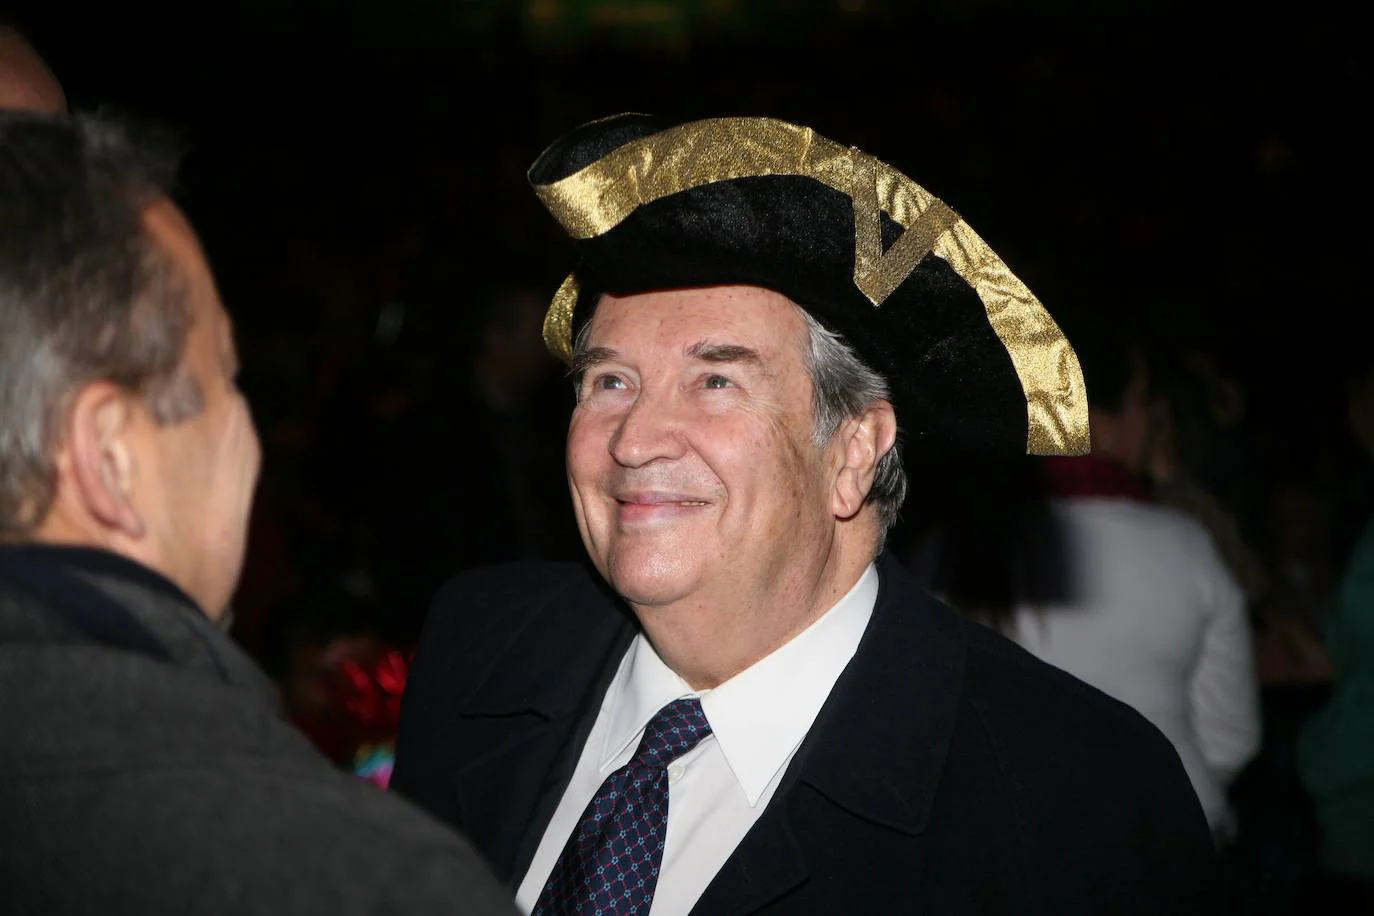 Jerónimo Saavedra con un sombrero de pirata en la gala de la reina de 2009.